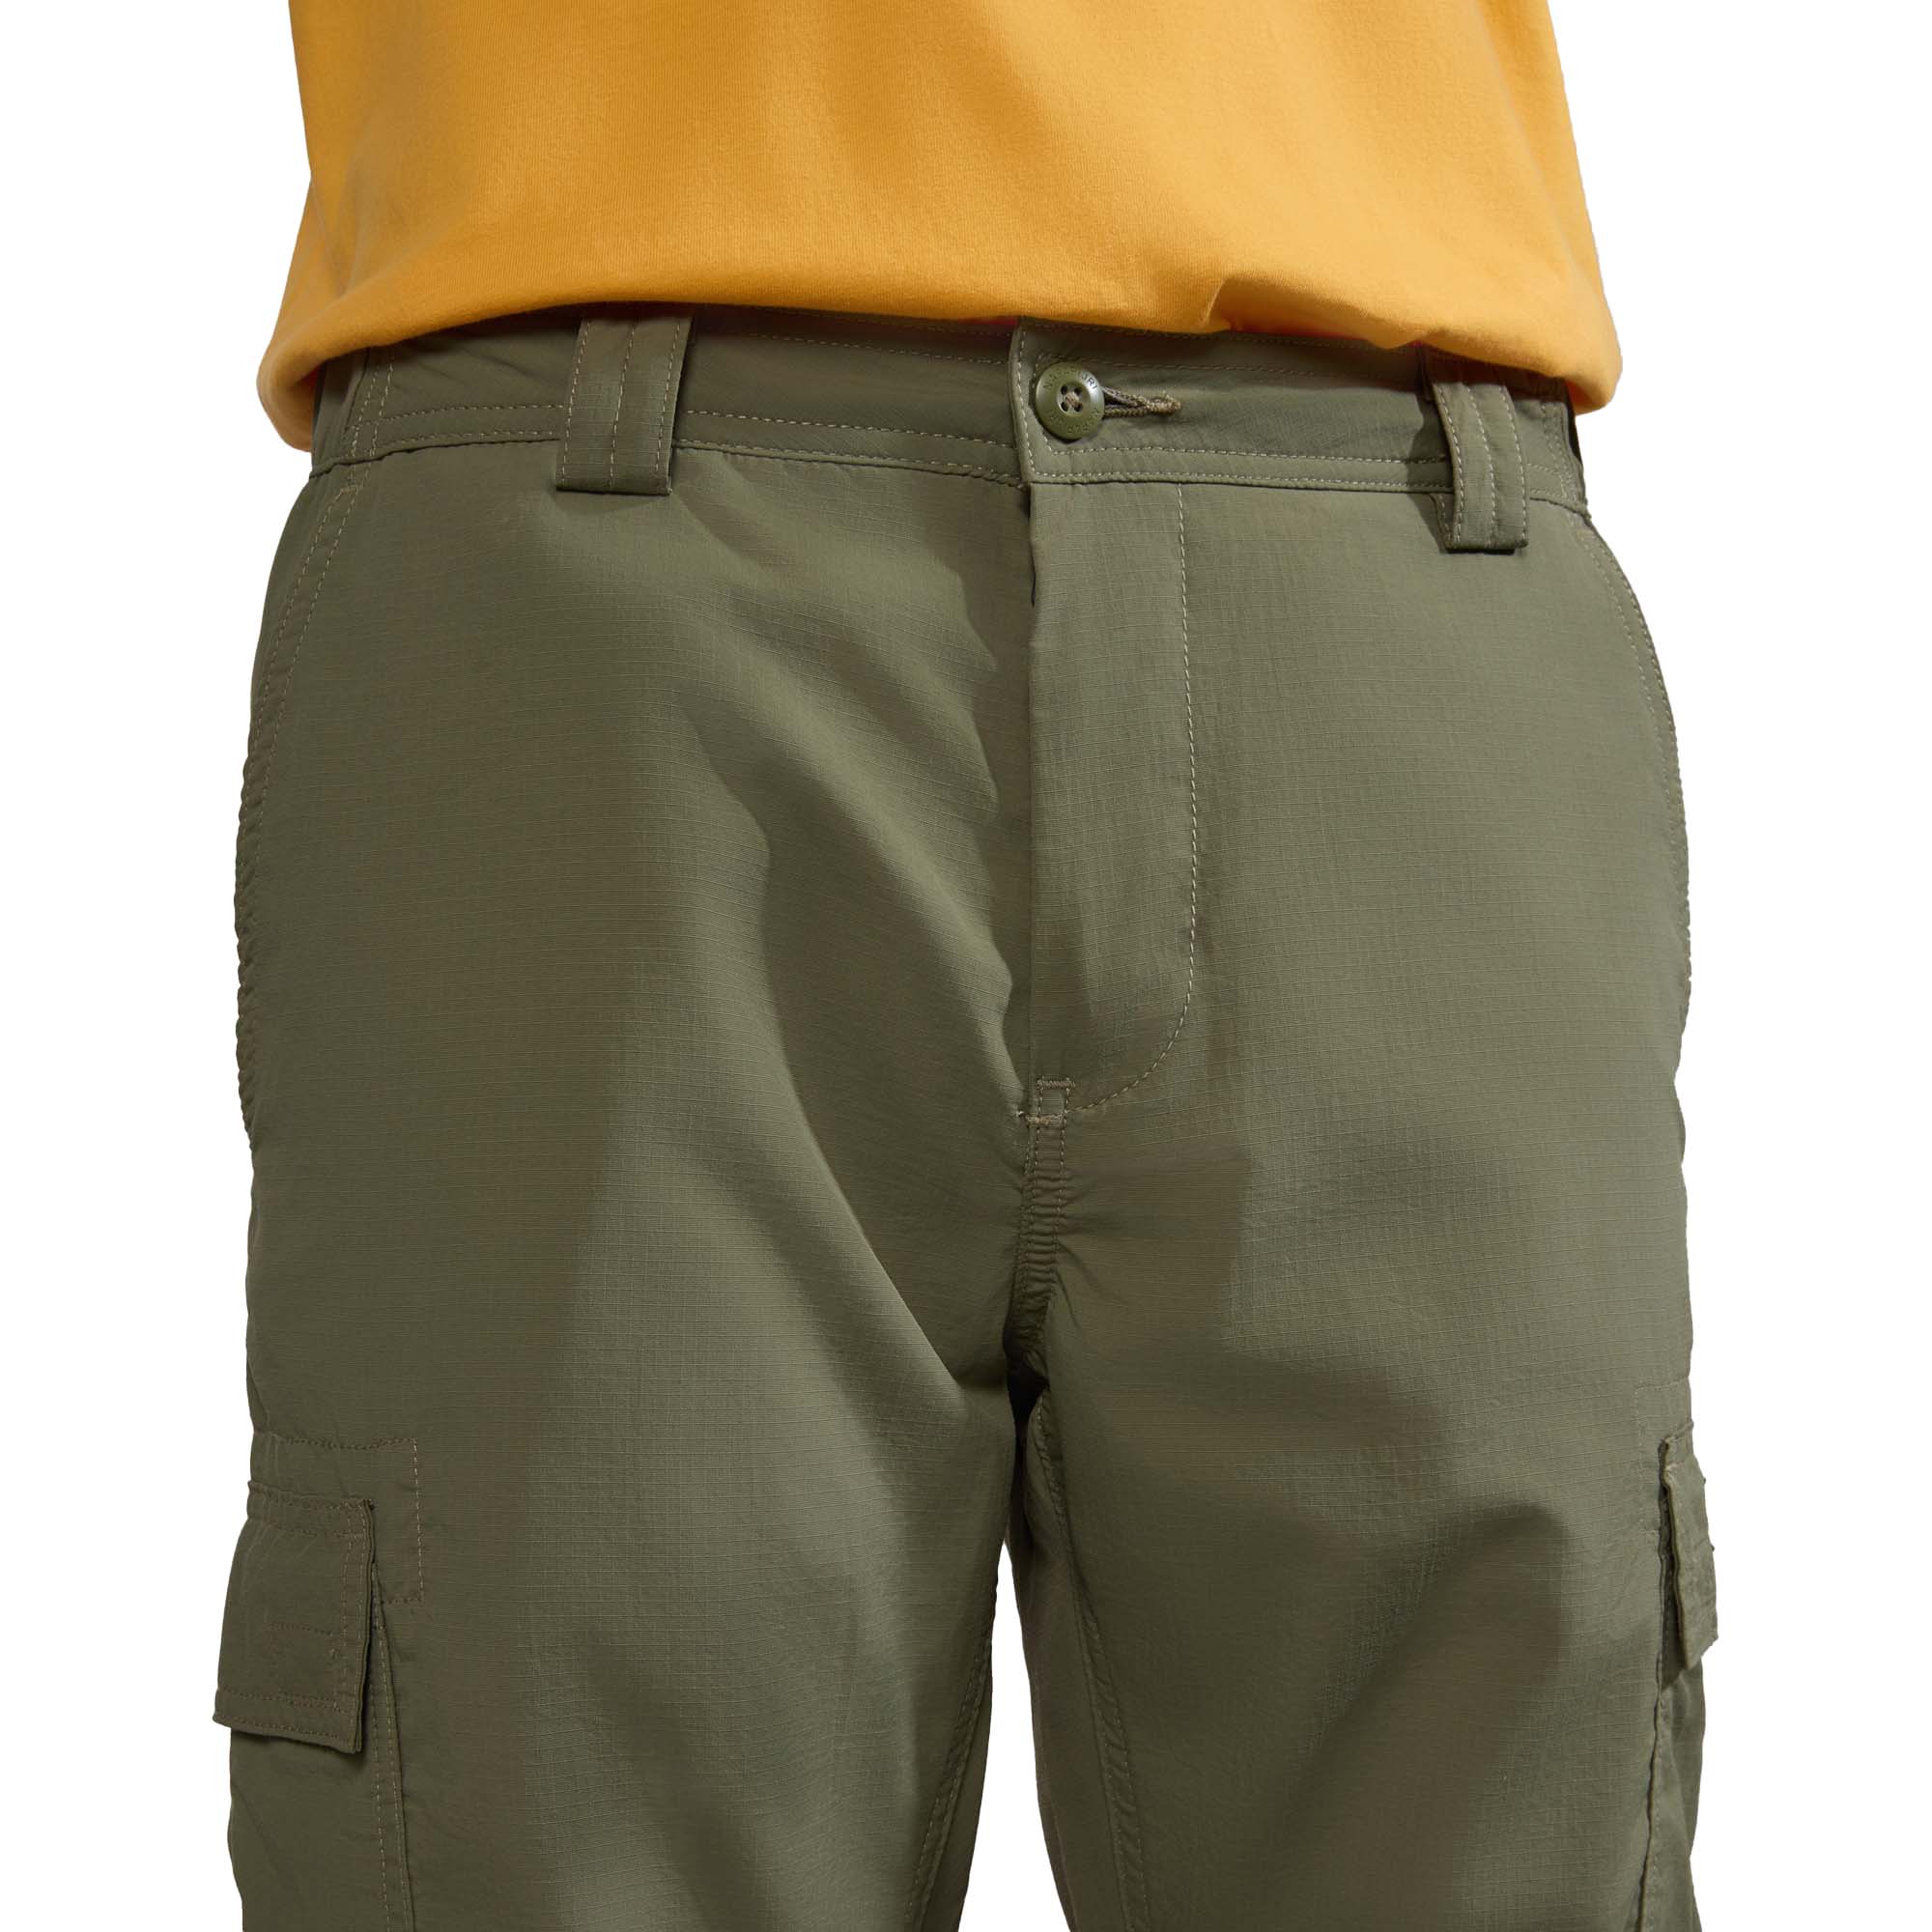 Napapijri Faber Cargo Trousers Men's Pants